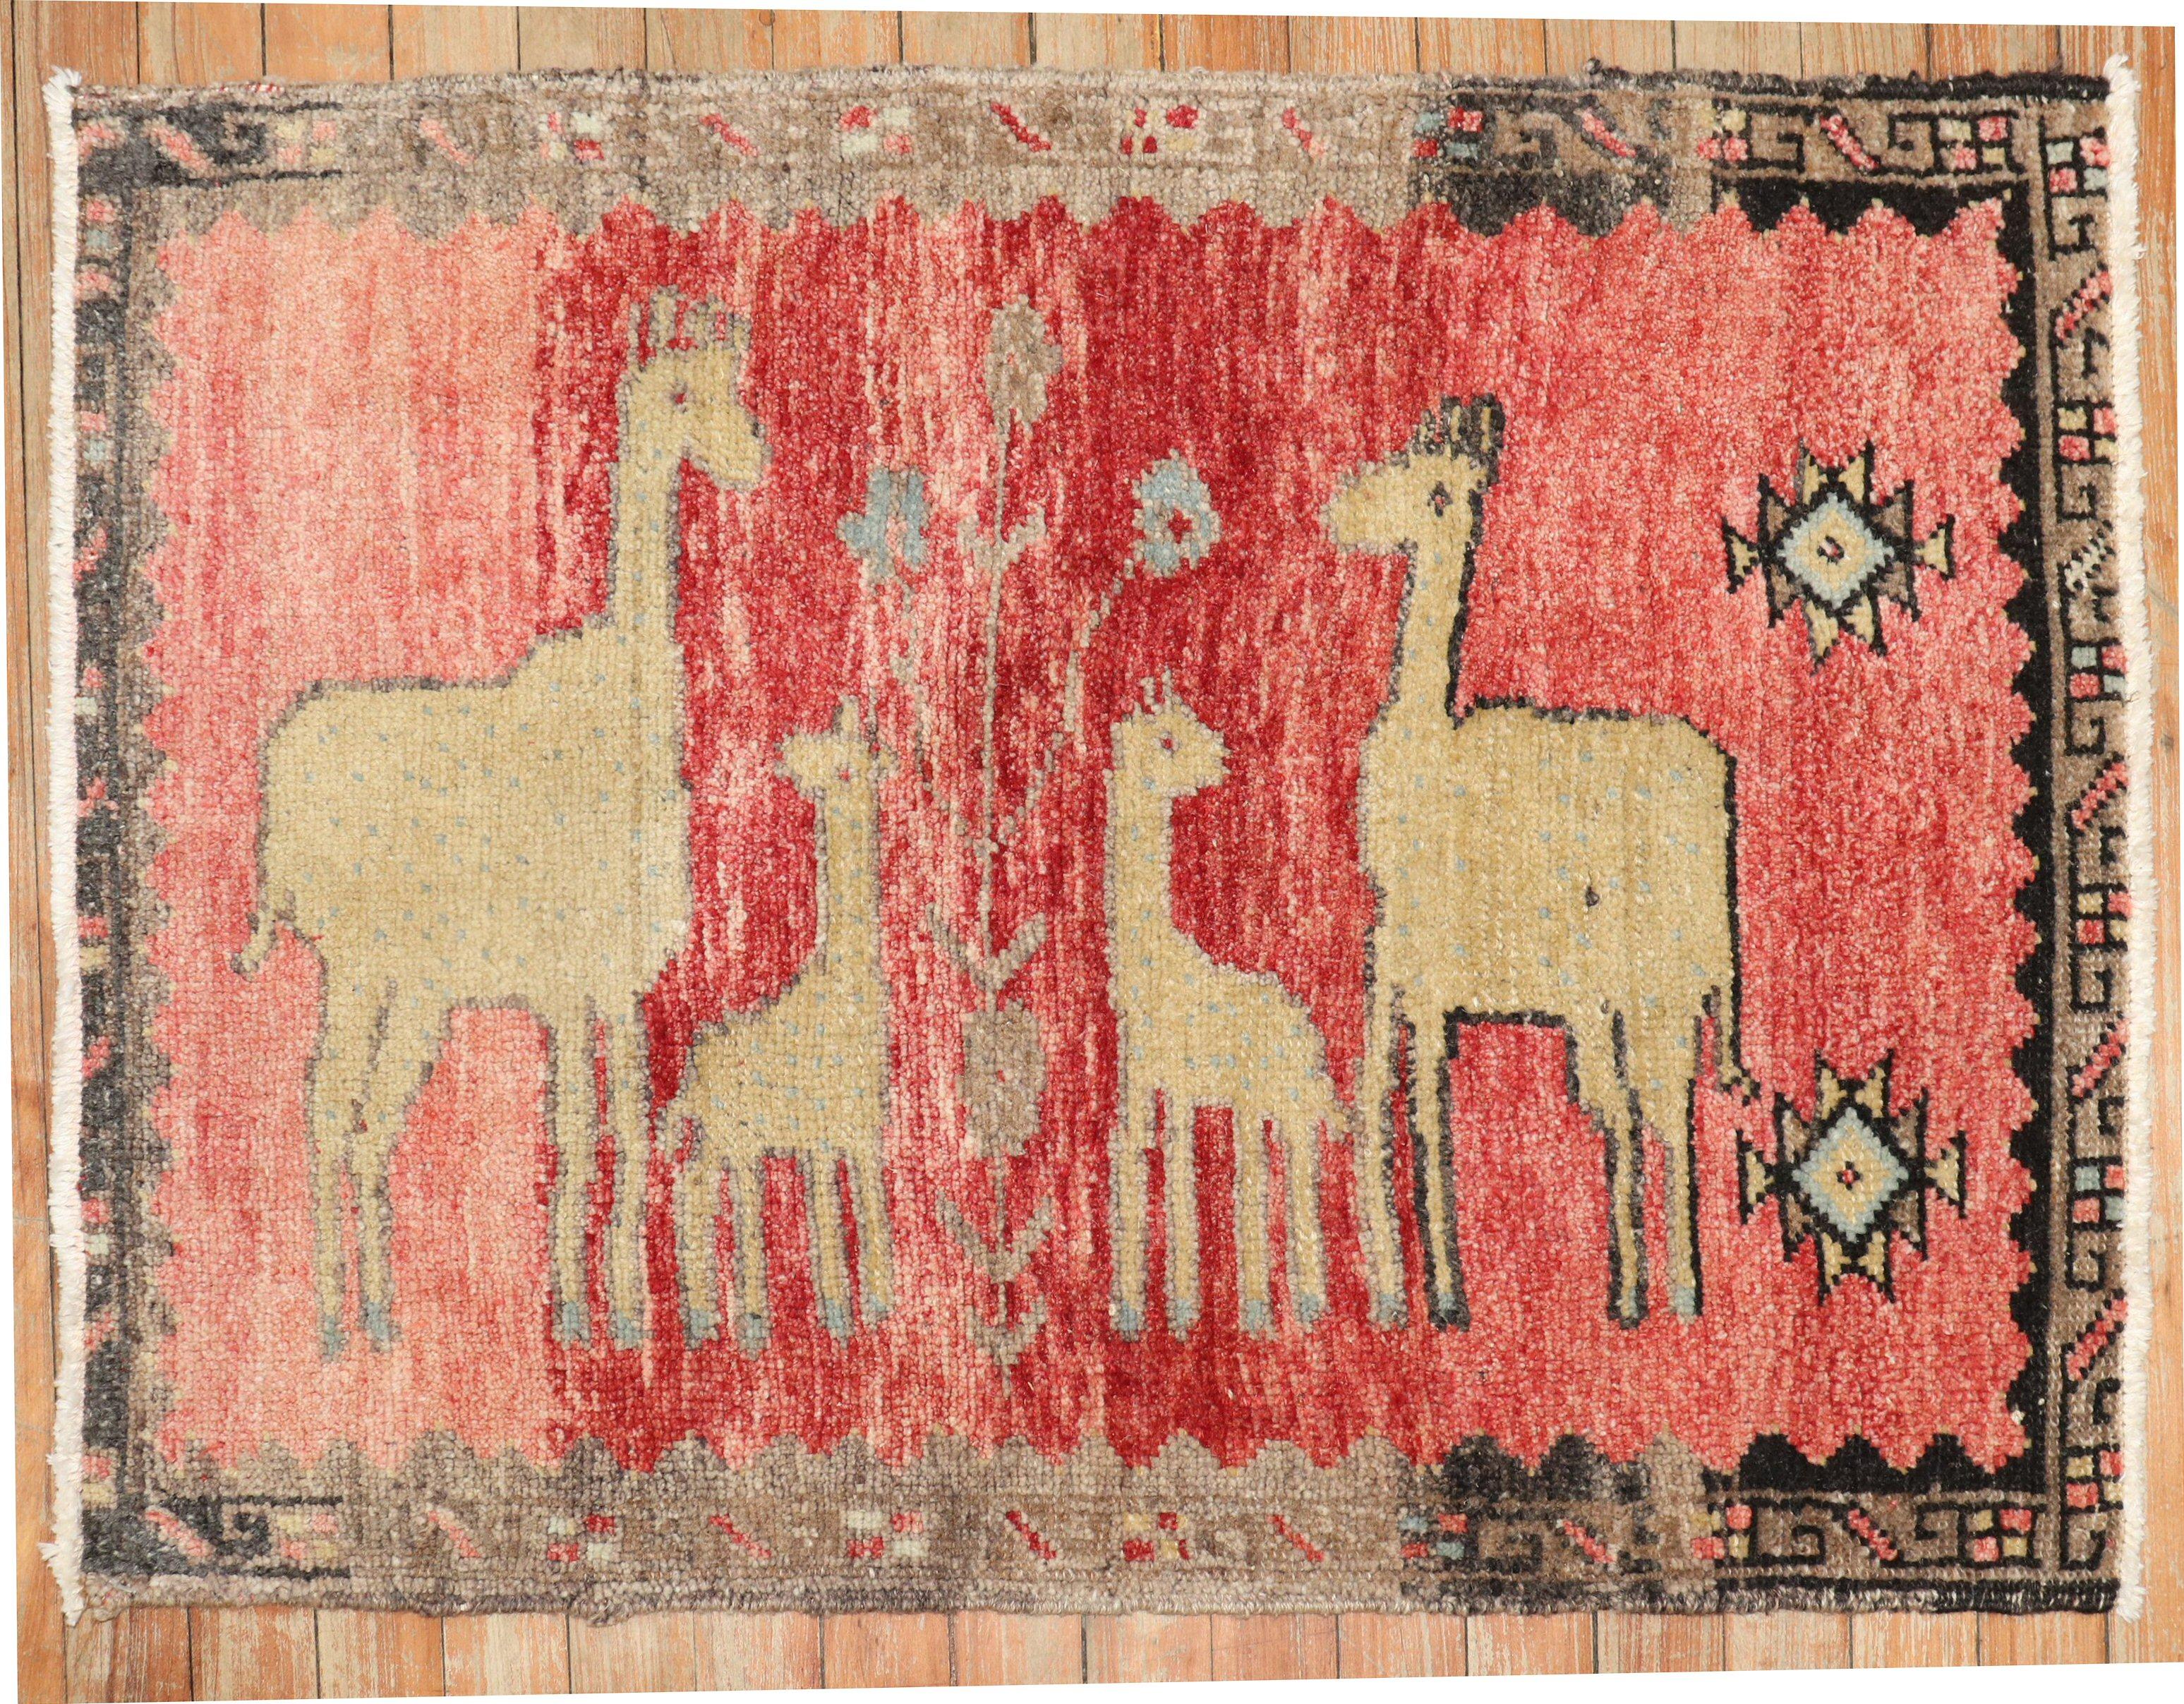 Un joli tapis noué à la main au milieu du 20e siècle, représentant un lama et des chèvres sur un fond rouge.

Mesures : 2'2'' x 3'.